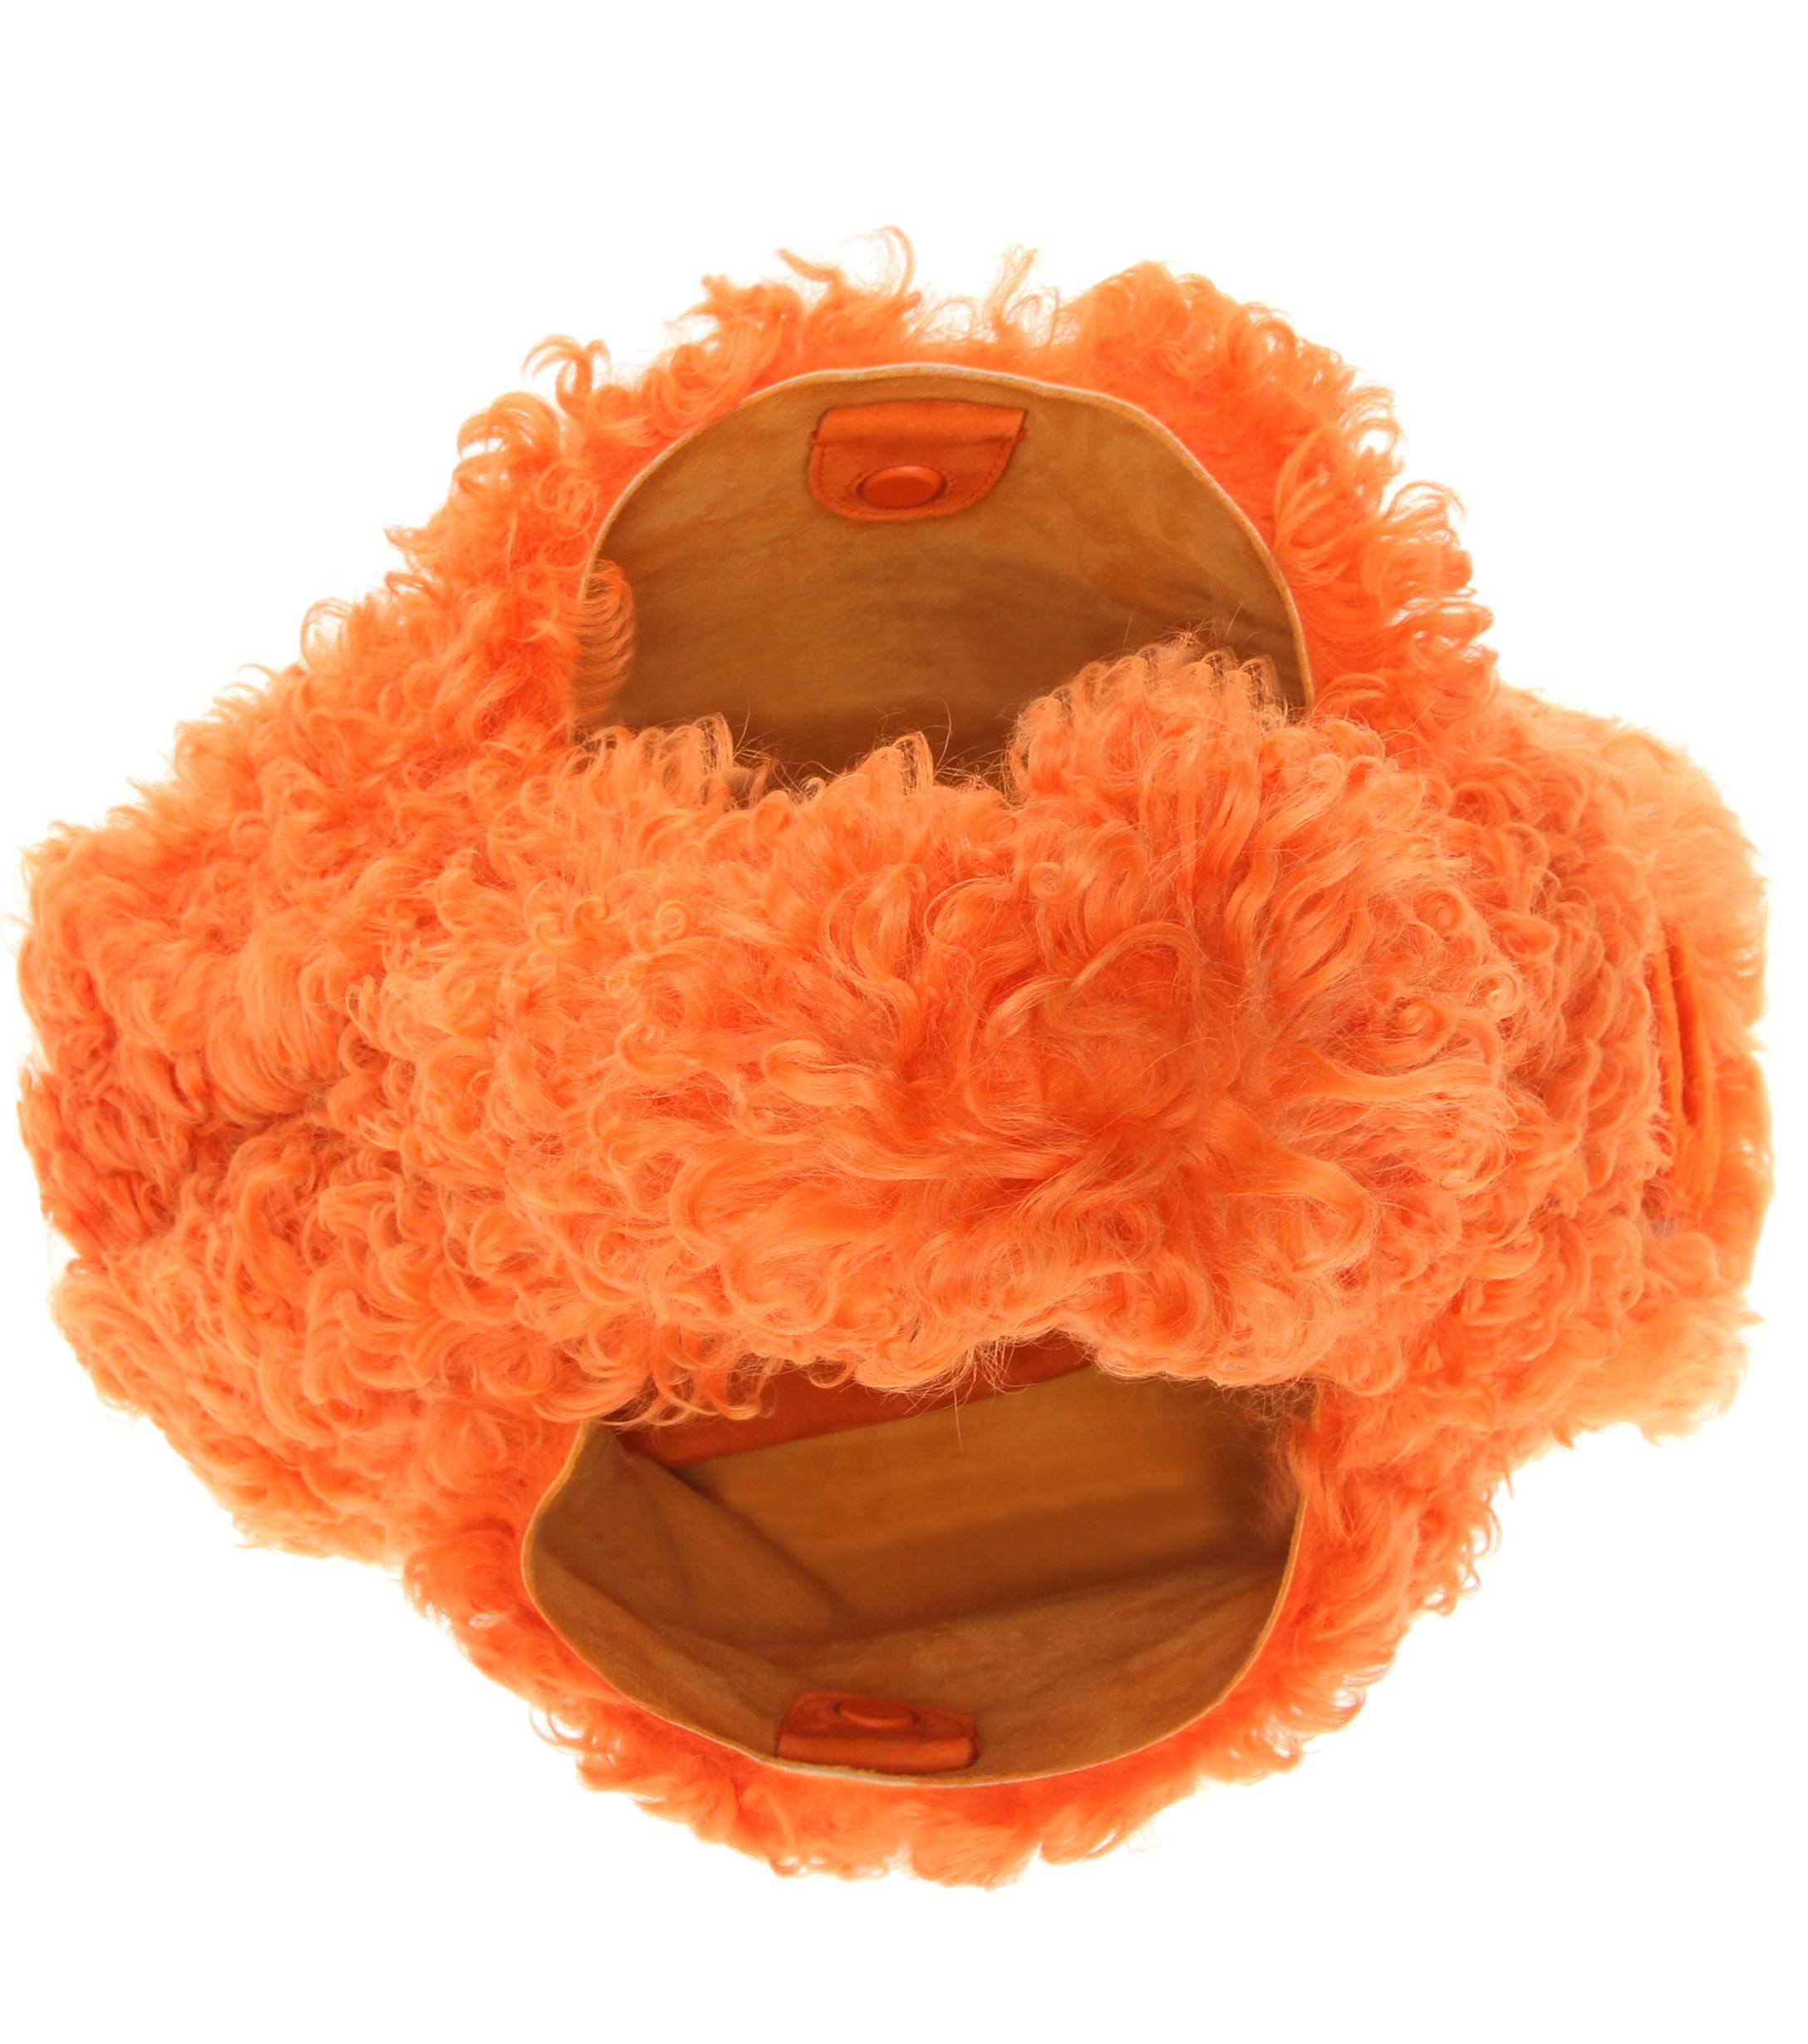 Miu Miu Orange Patent Shearling Bag